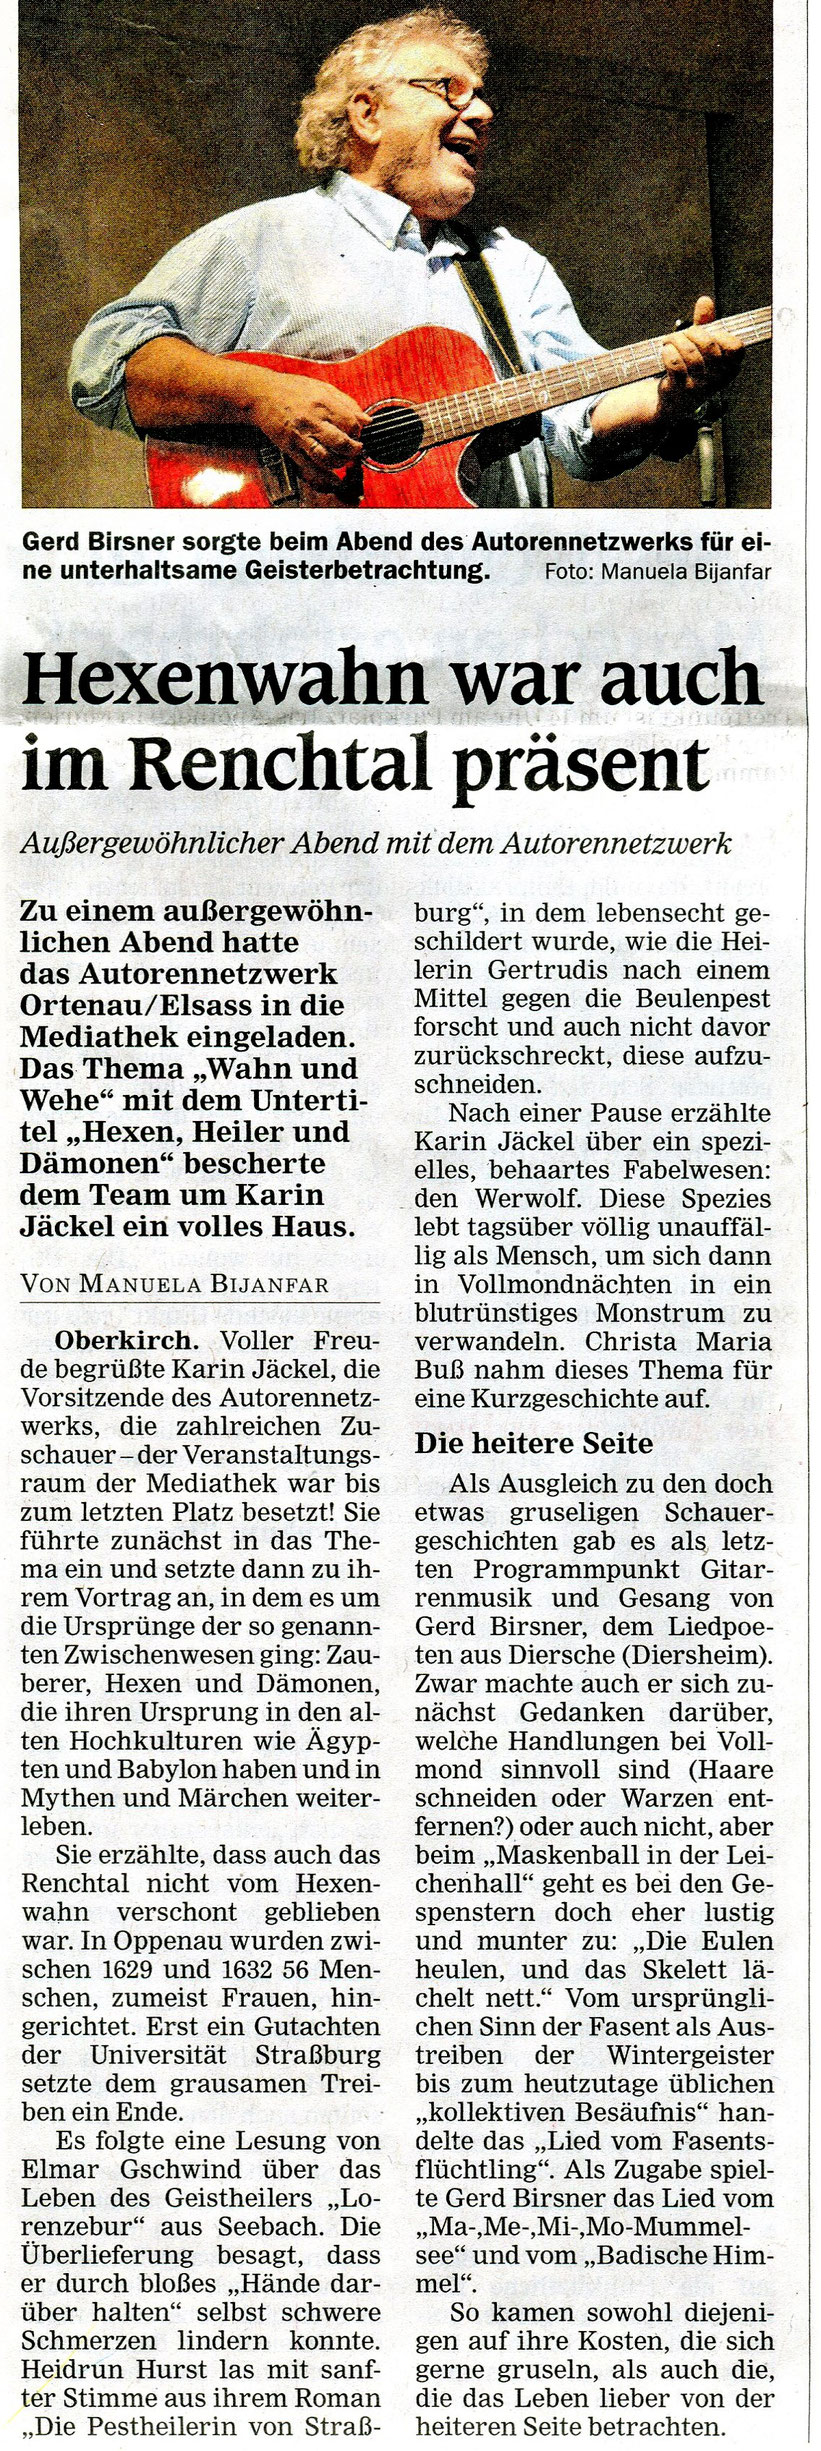 Mittelbadische Presse ARZ Oberkirch 22.01.2020